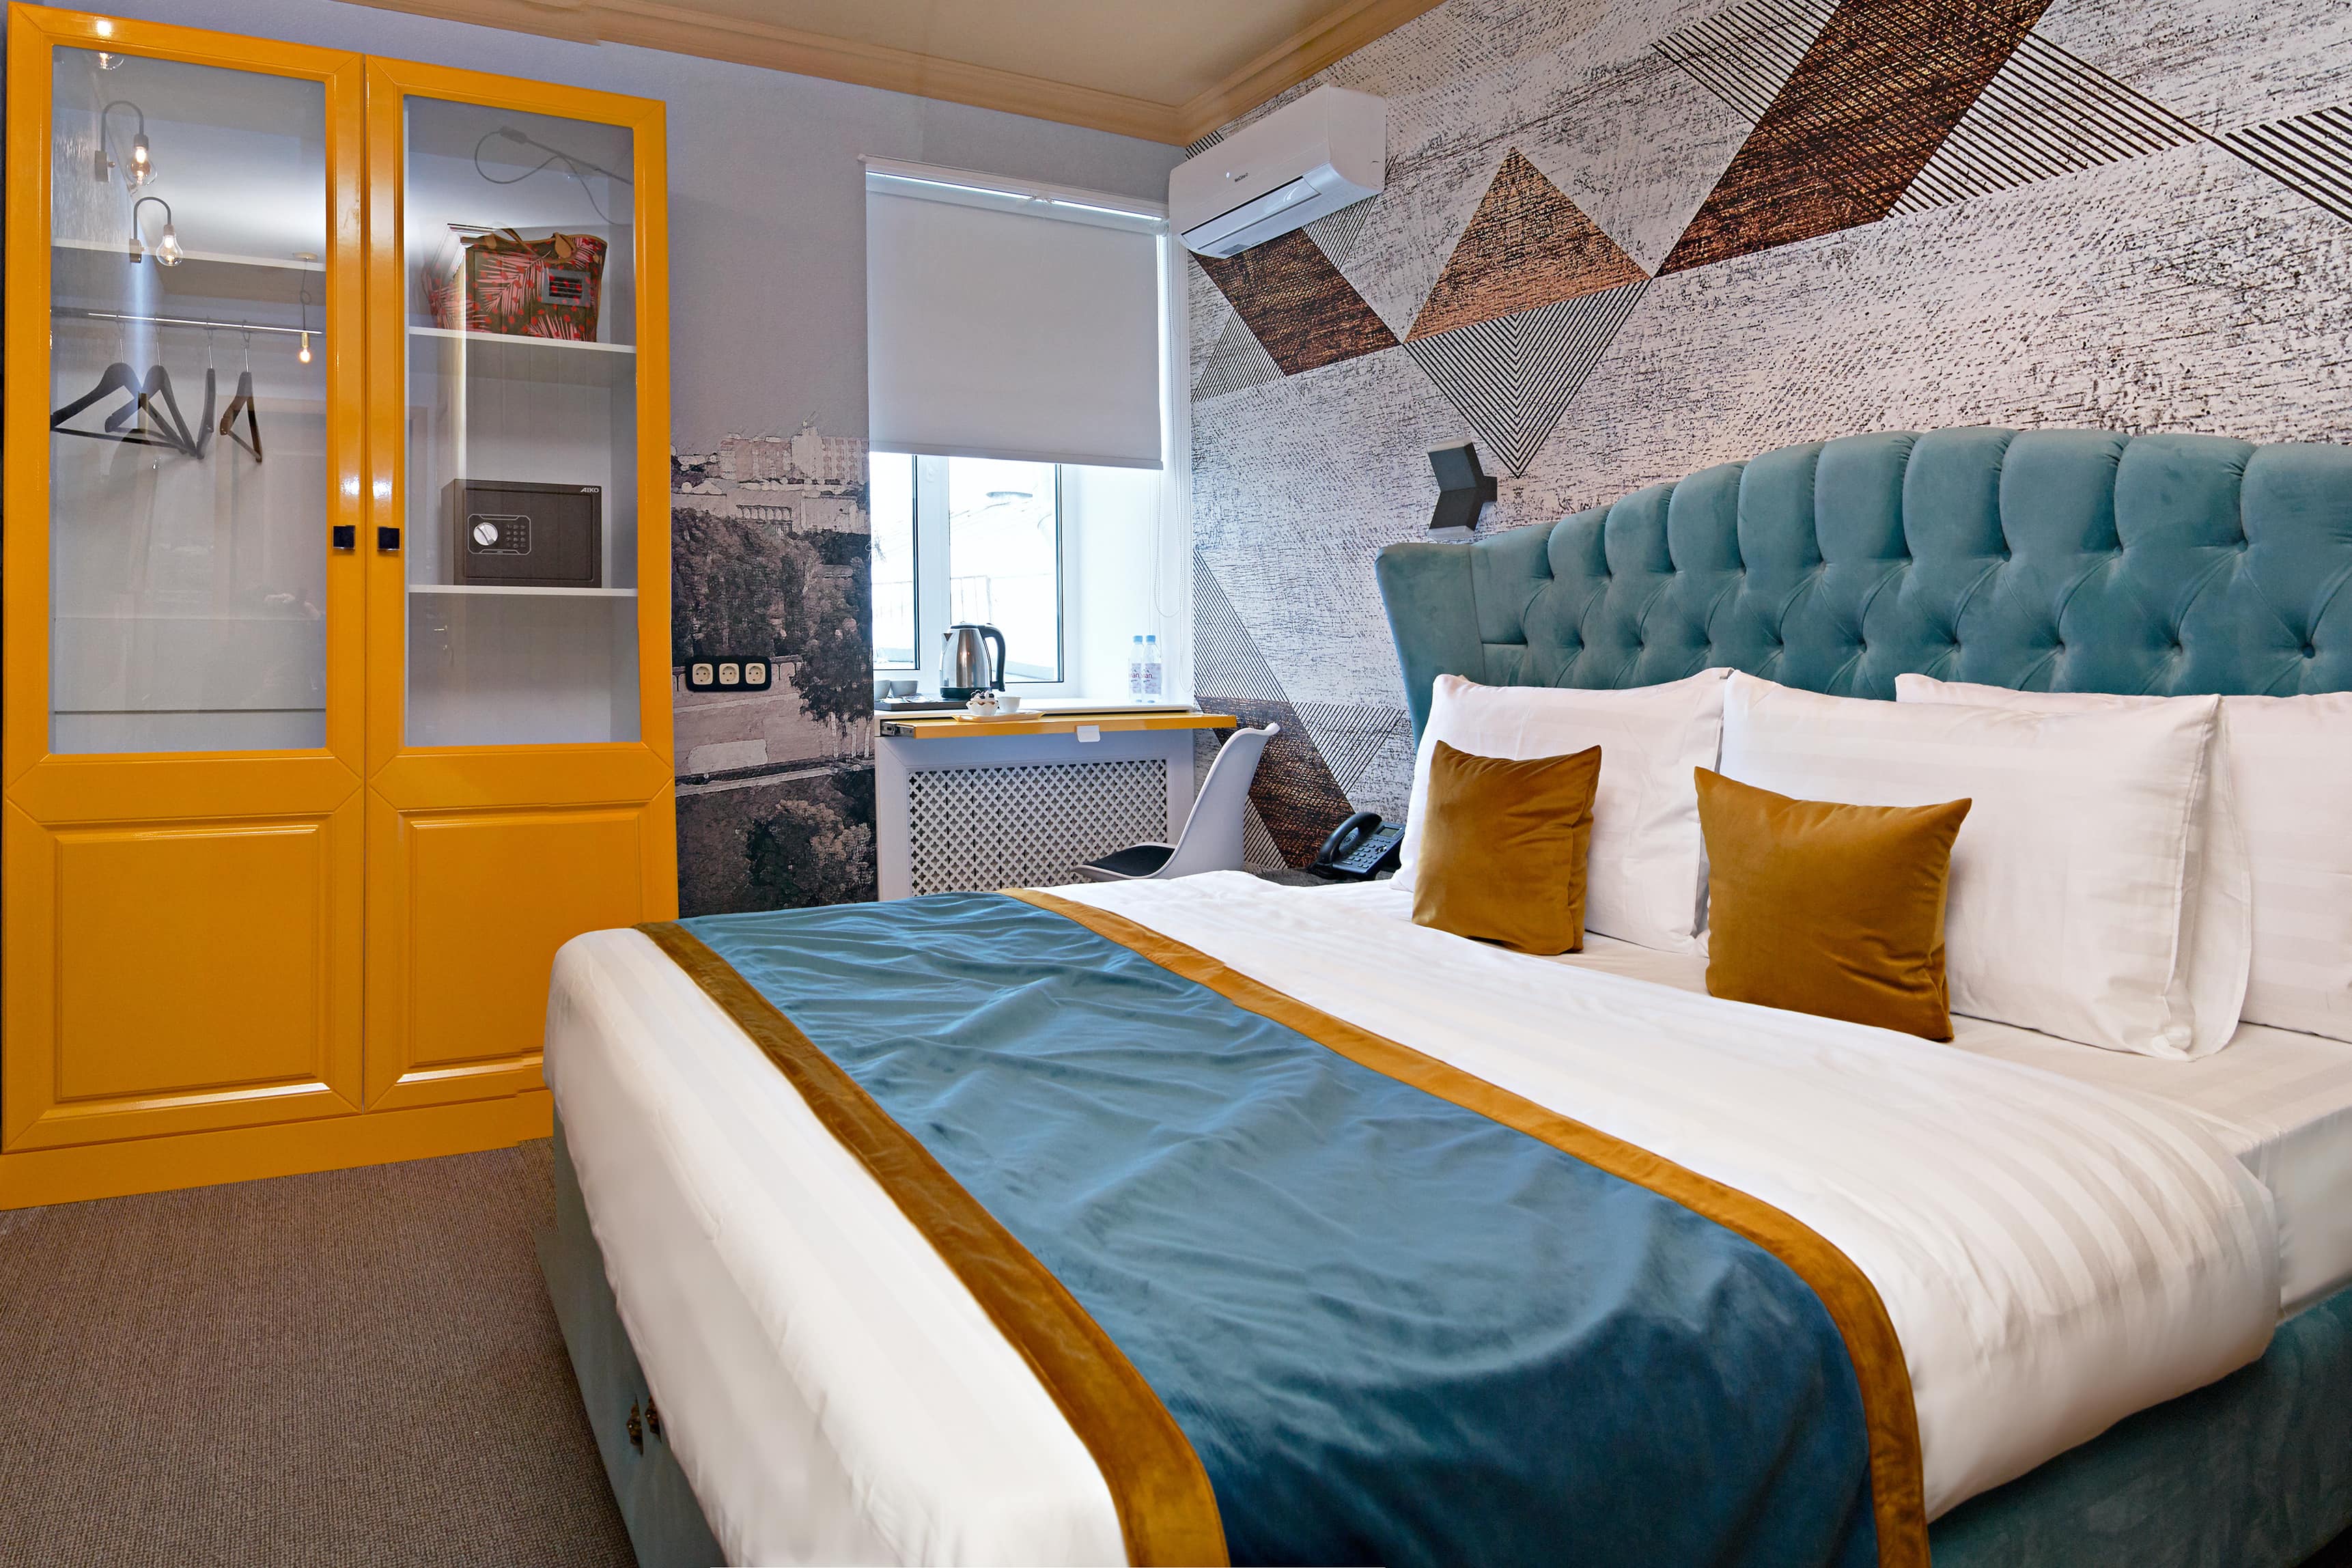 Белоснежную кровать укрывает нежно-голубое саше с золотой окантовкой.